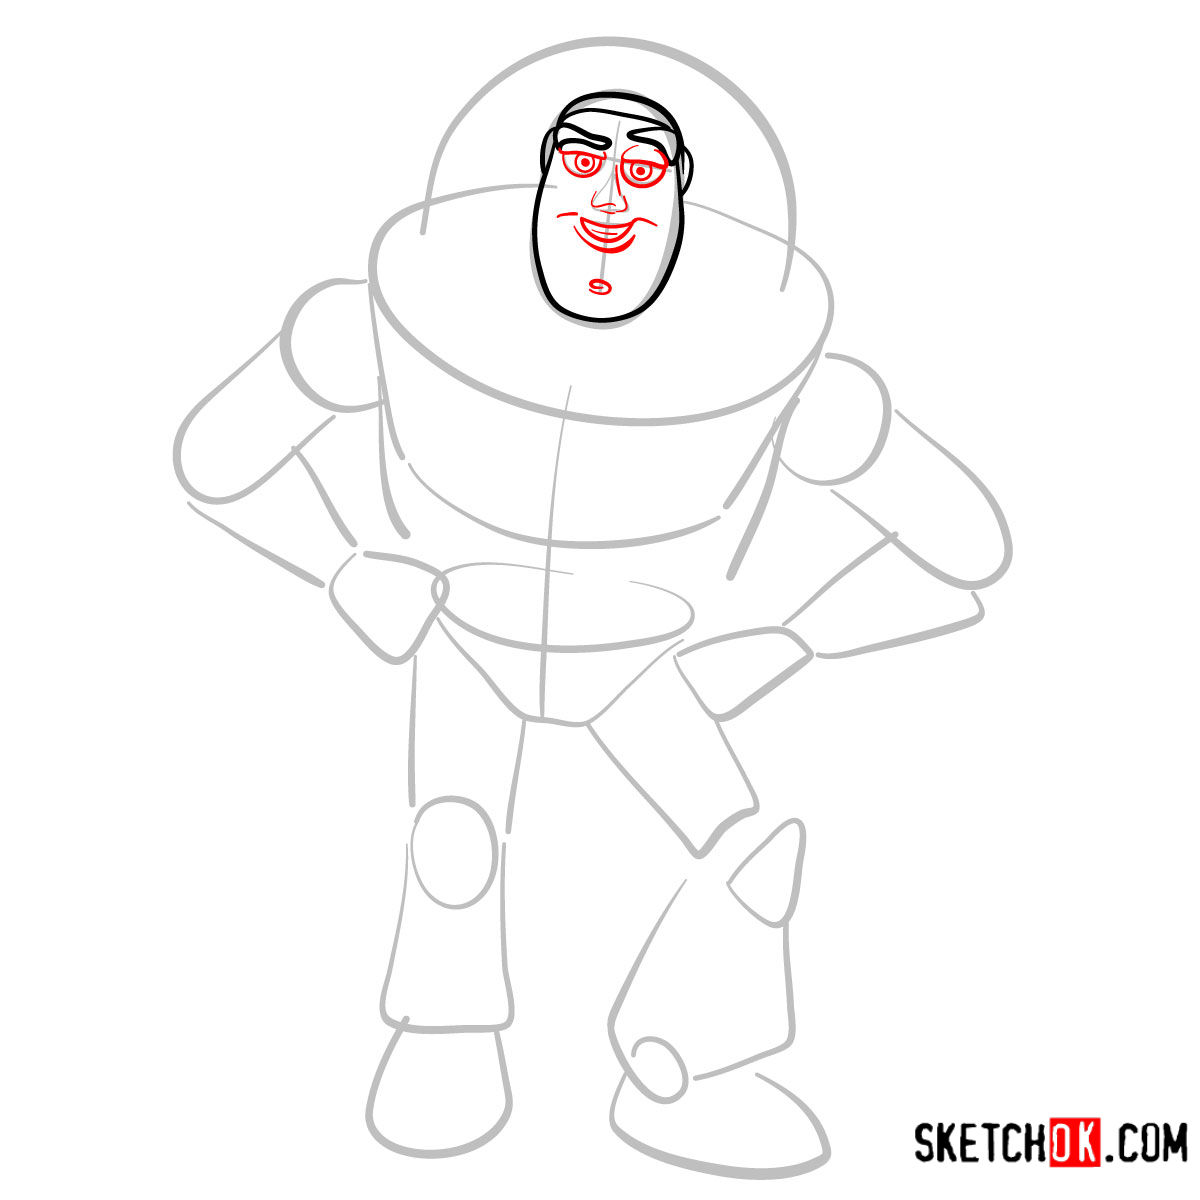 How to draw Buzz Lightyear | Toy Story - step 04